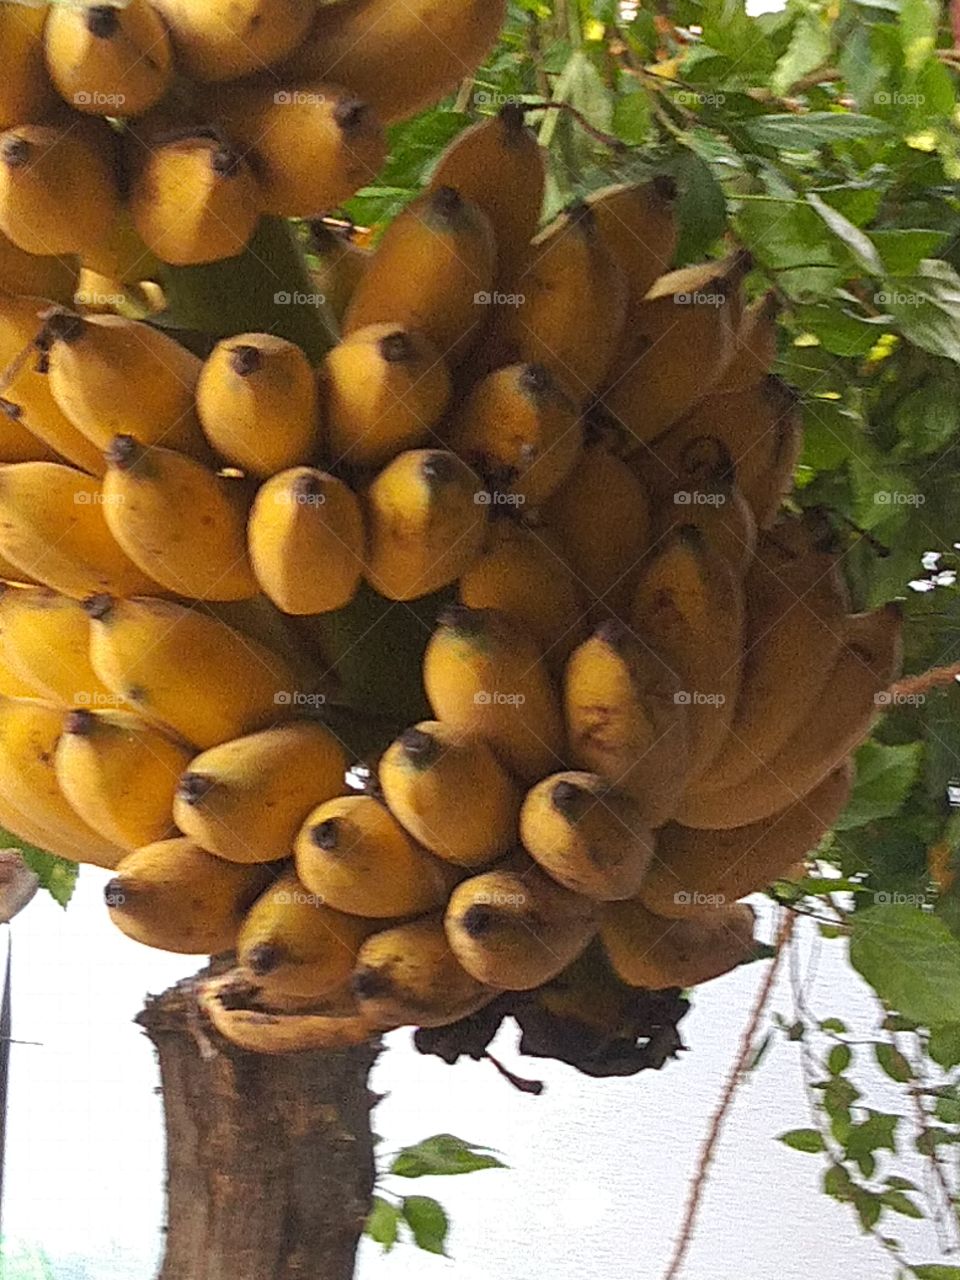 Banana is queen of fruit